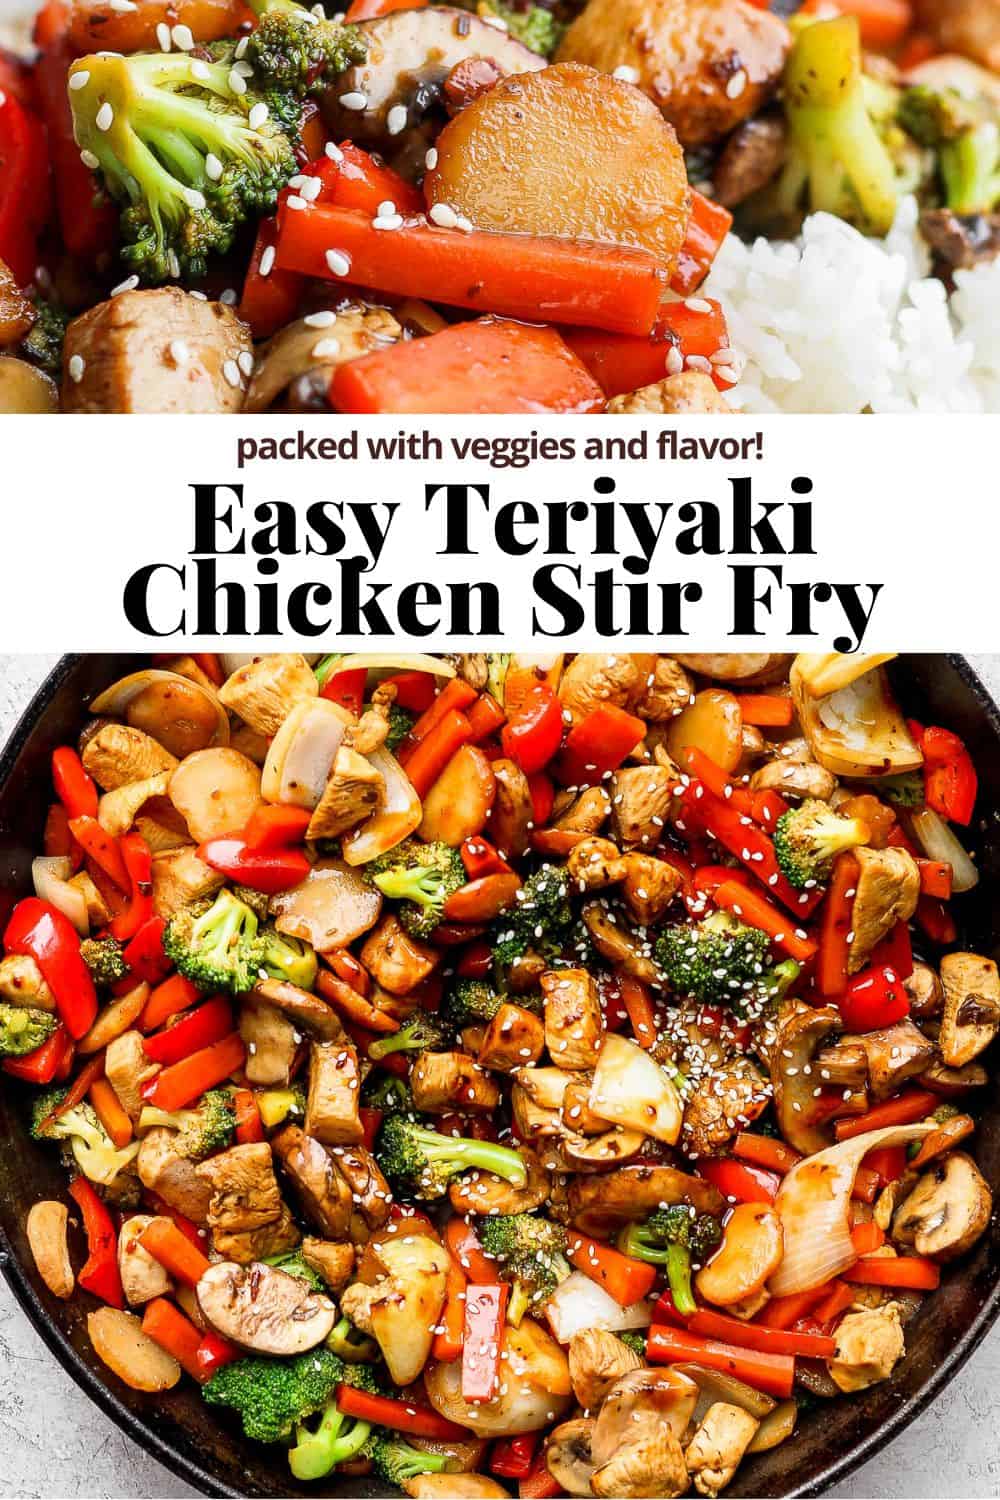 Pinterest image for teriyaki chicken stir fry.